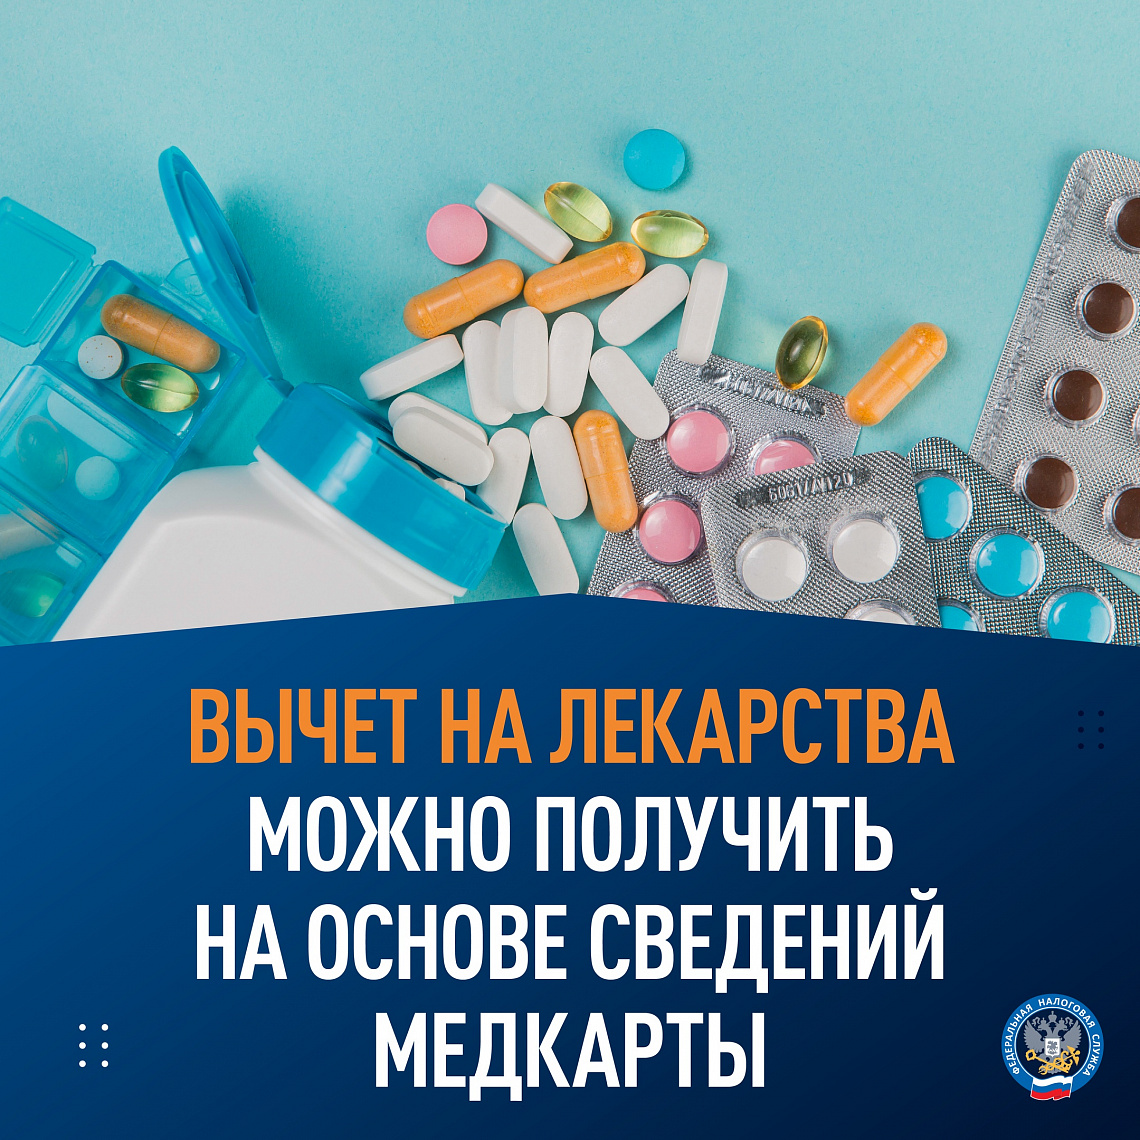 ФНС России напоминает, что вычет на лекарства можно получить на основе сведений медкарты